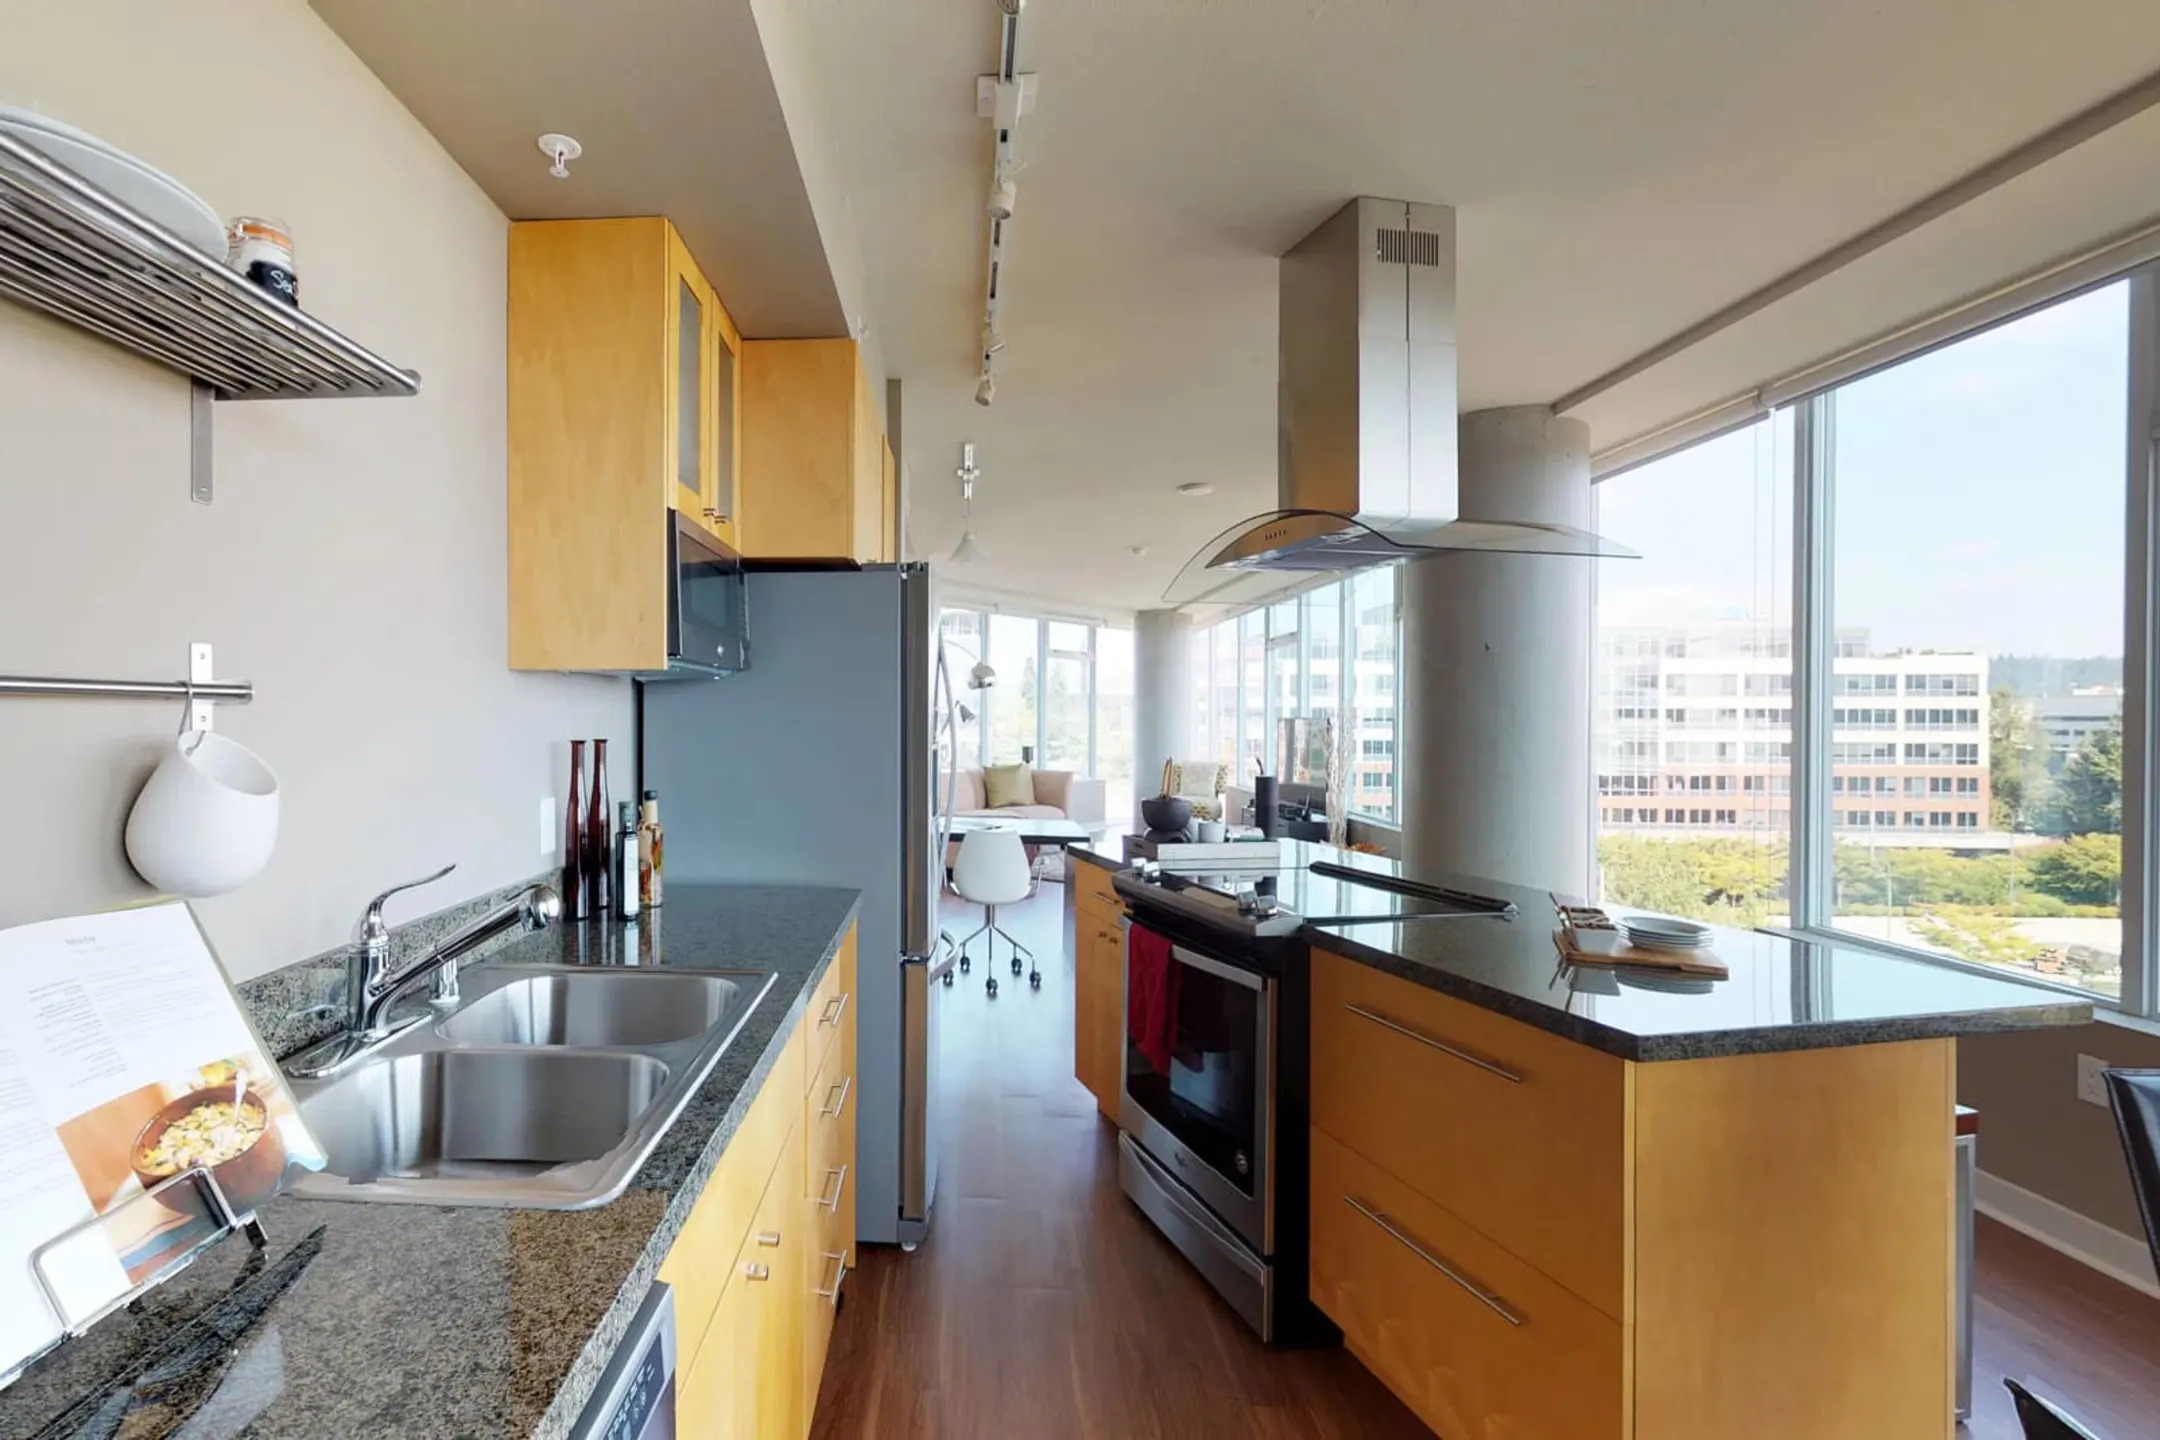 Kitchen - Elements Apartments - Bellevue, WA